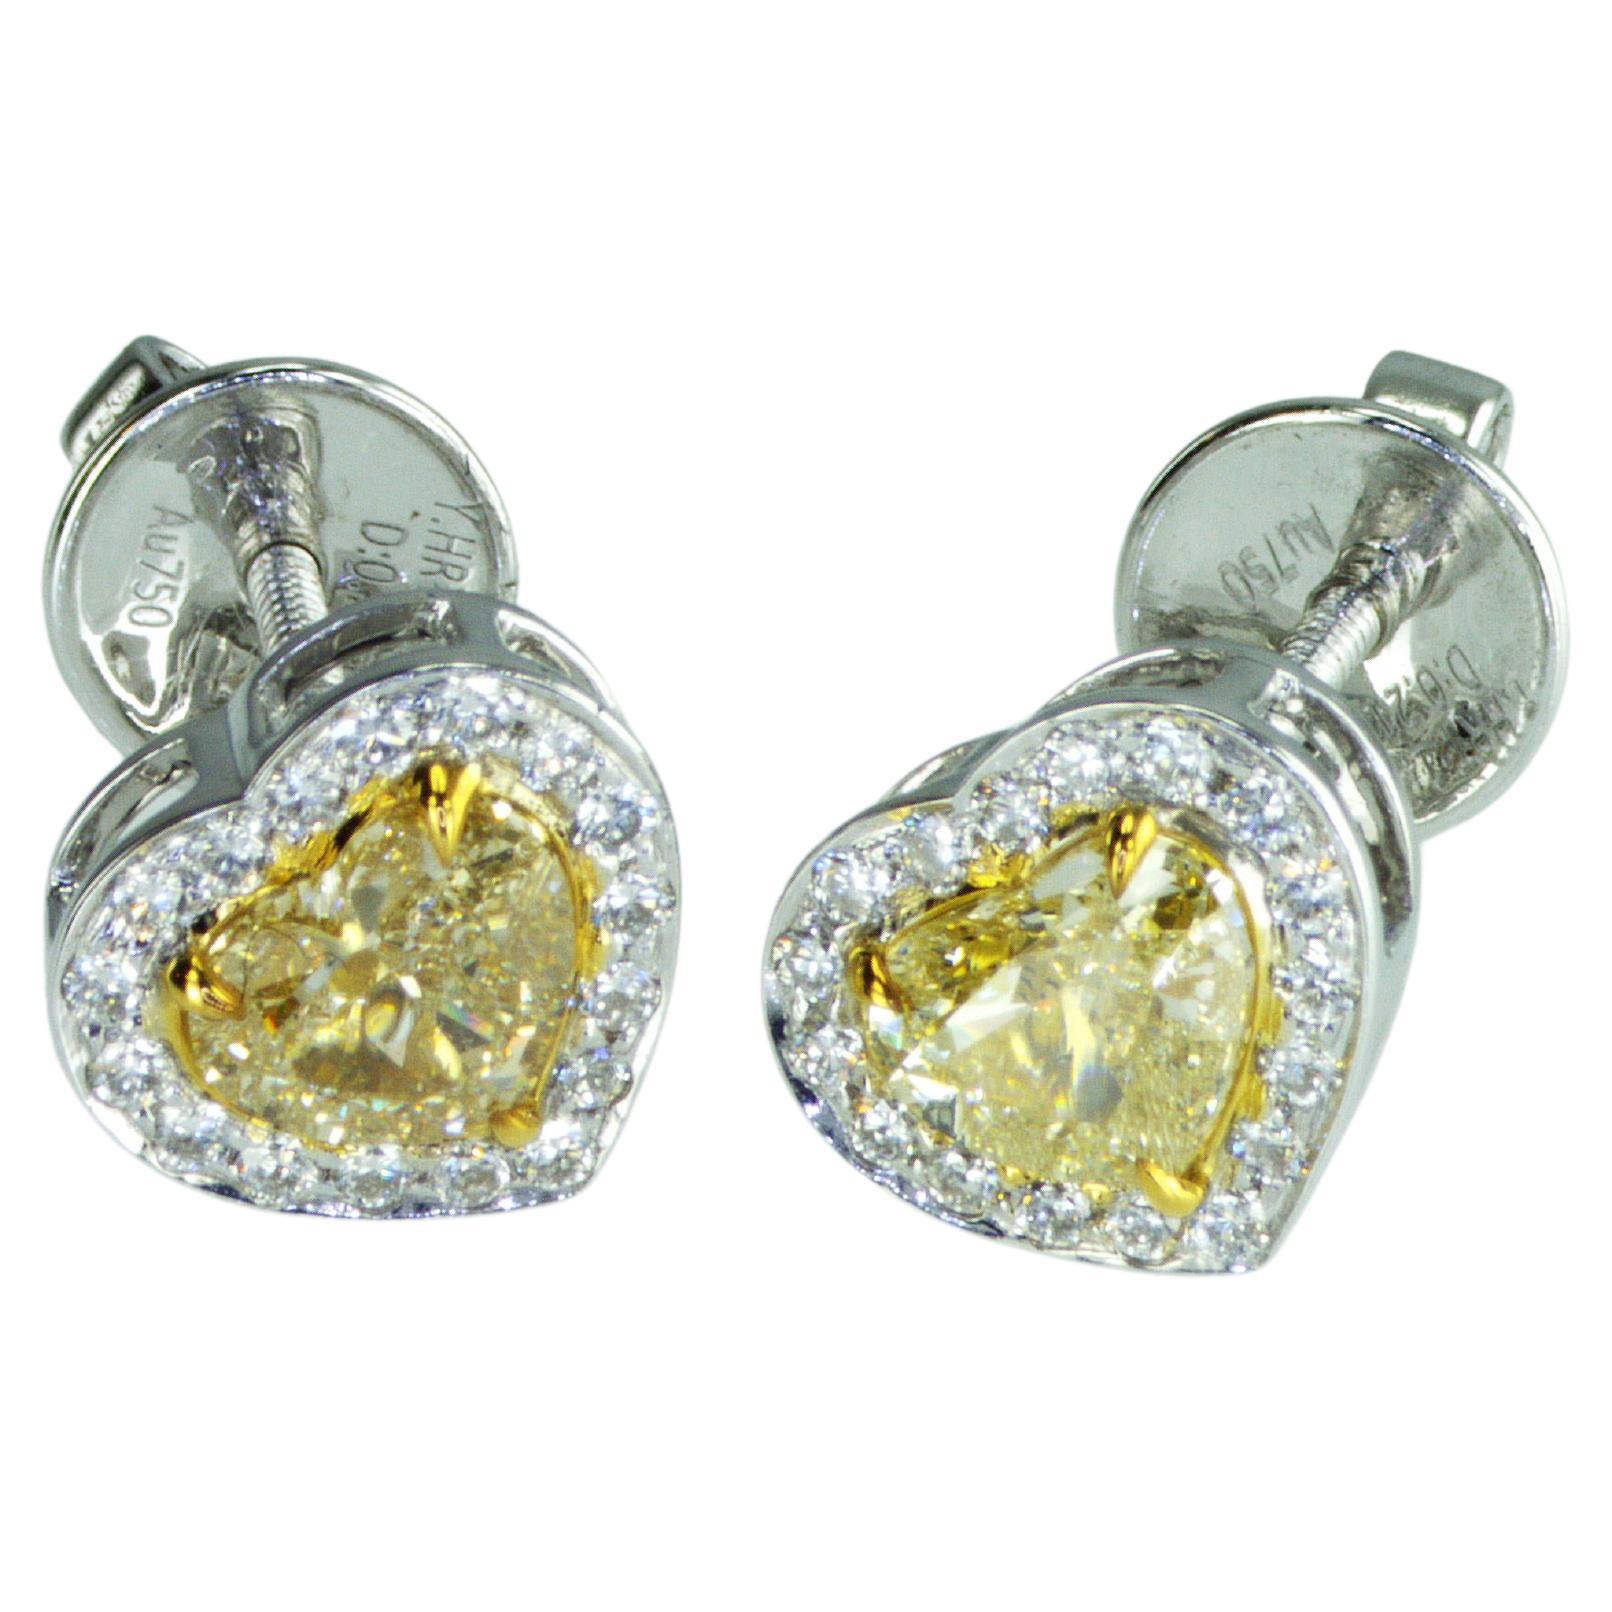 IDL certified 1.42 carat Fancy Yellow Heart shape natural diamonds Earrings For Sale